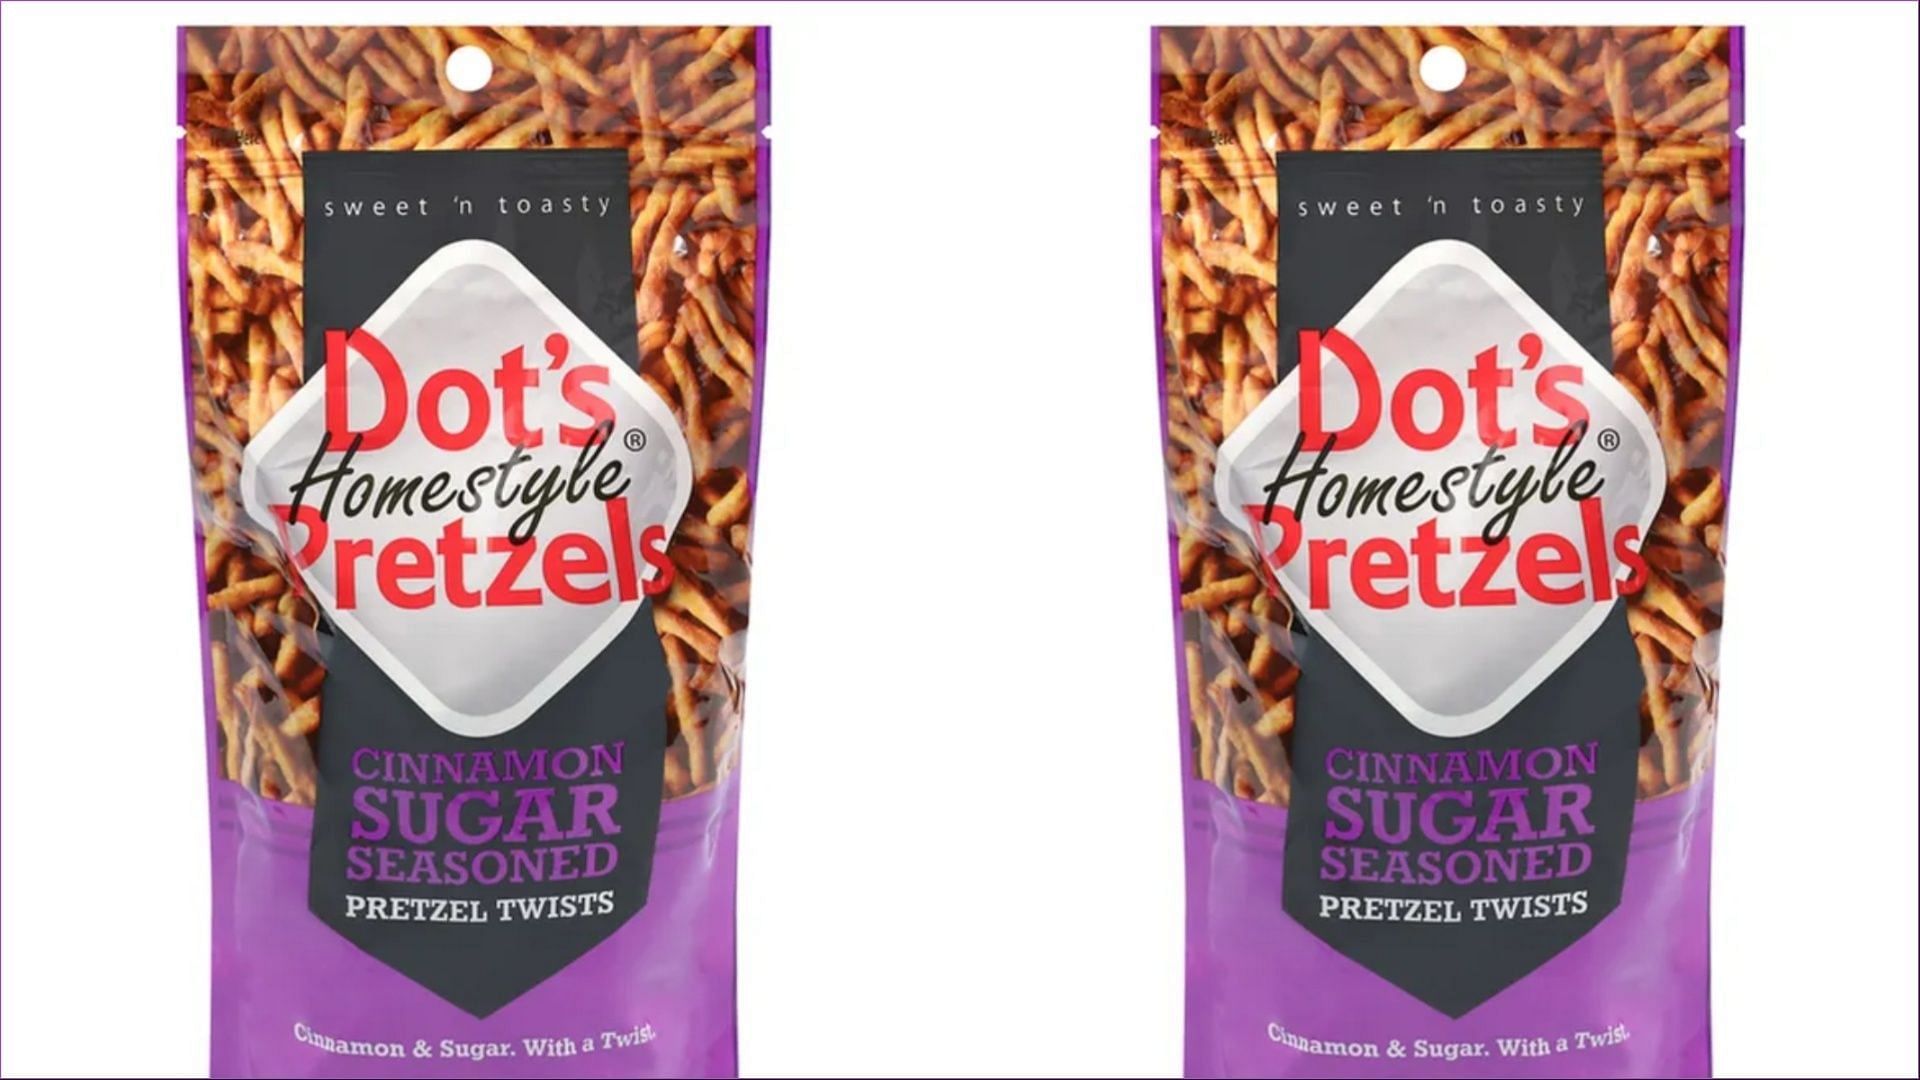 Dots Cinnamon Sugar Pretzels (Image via Instacart)